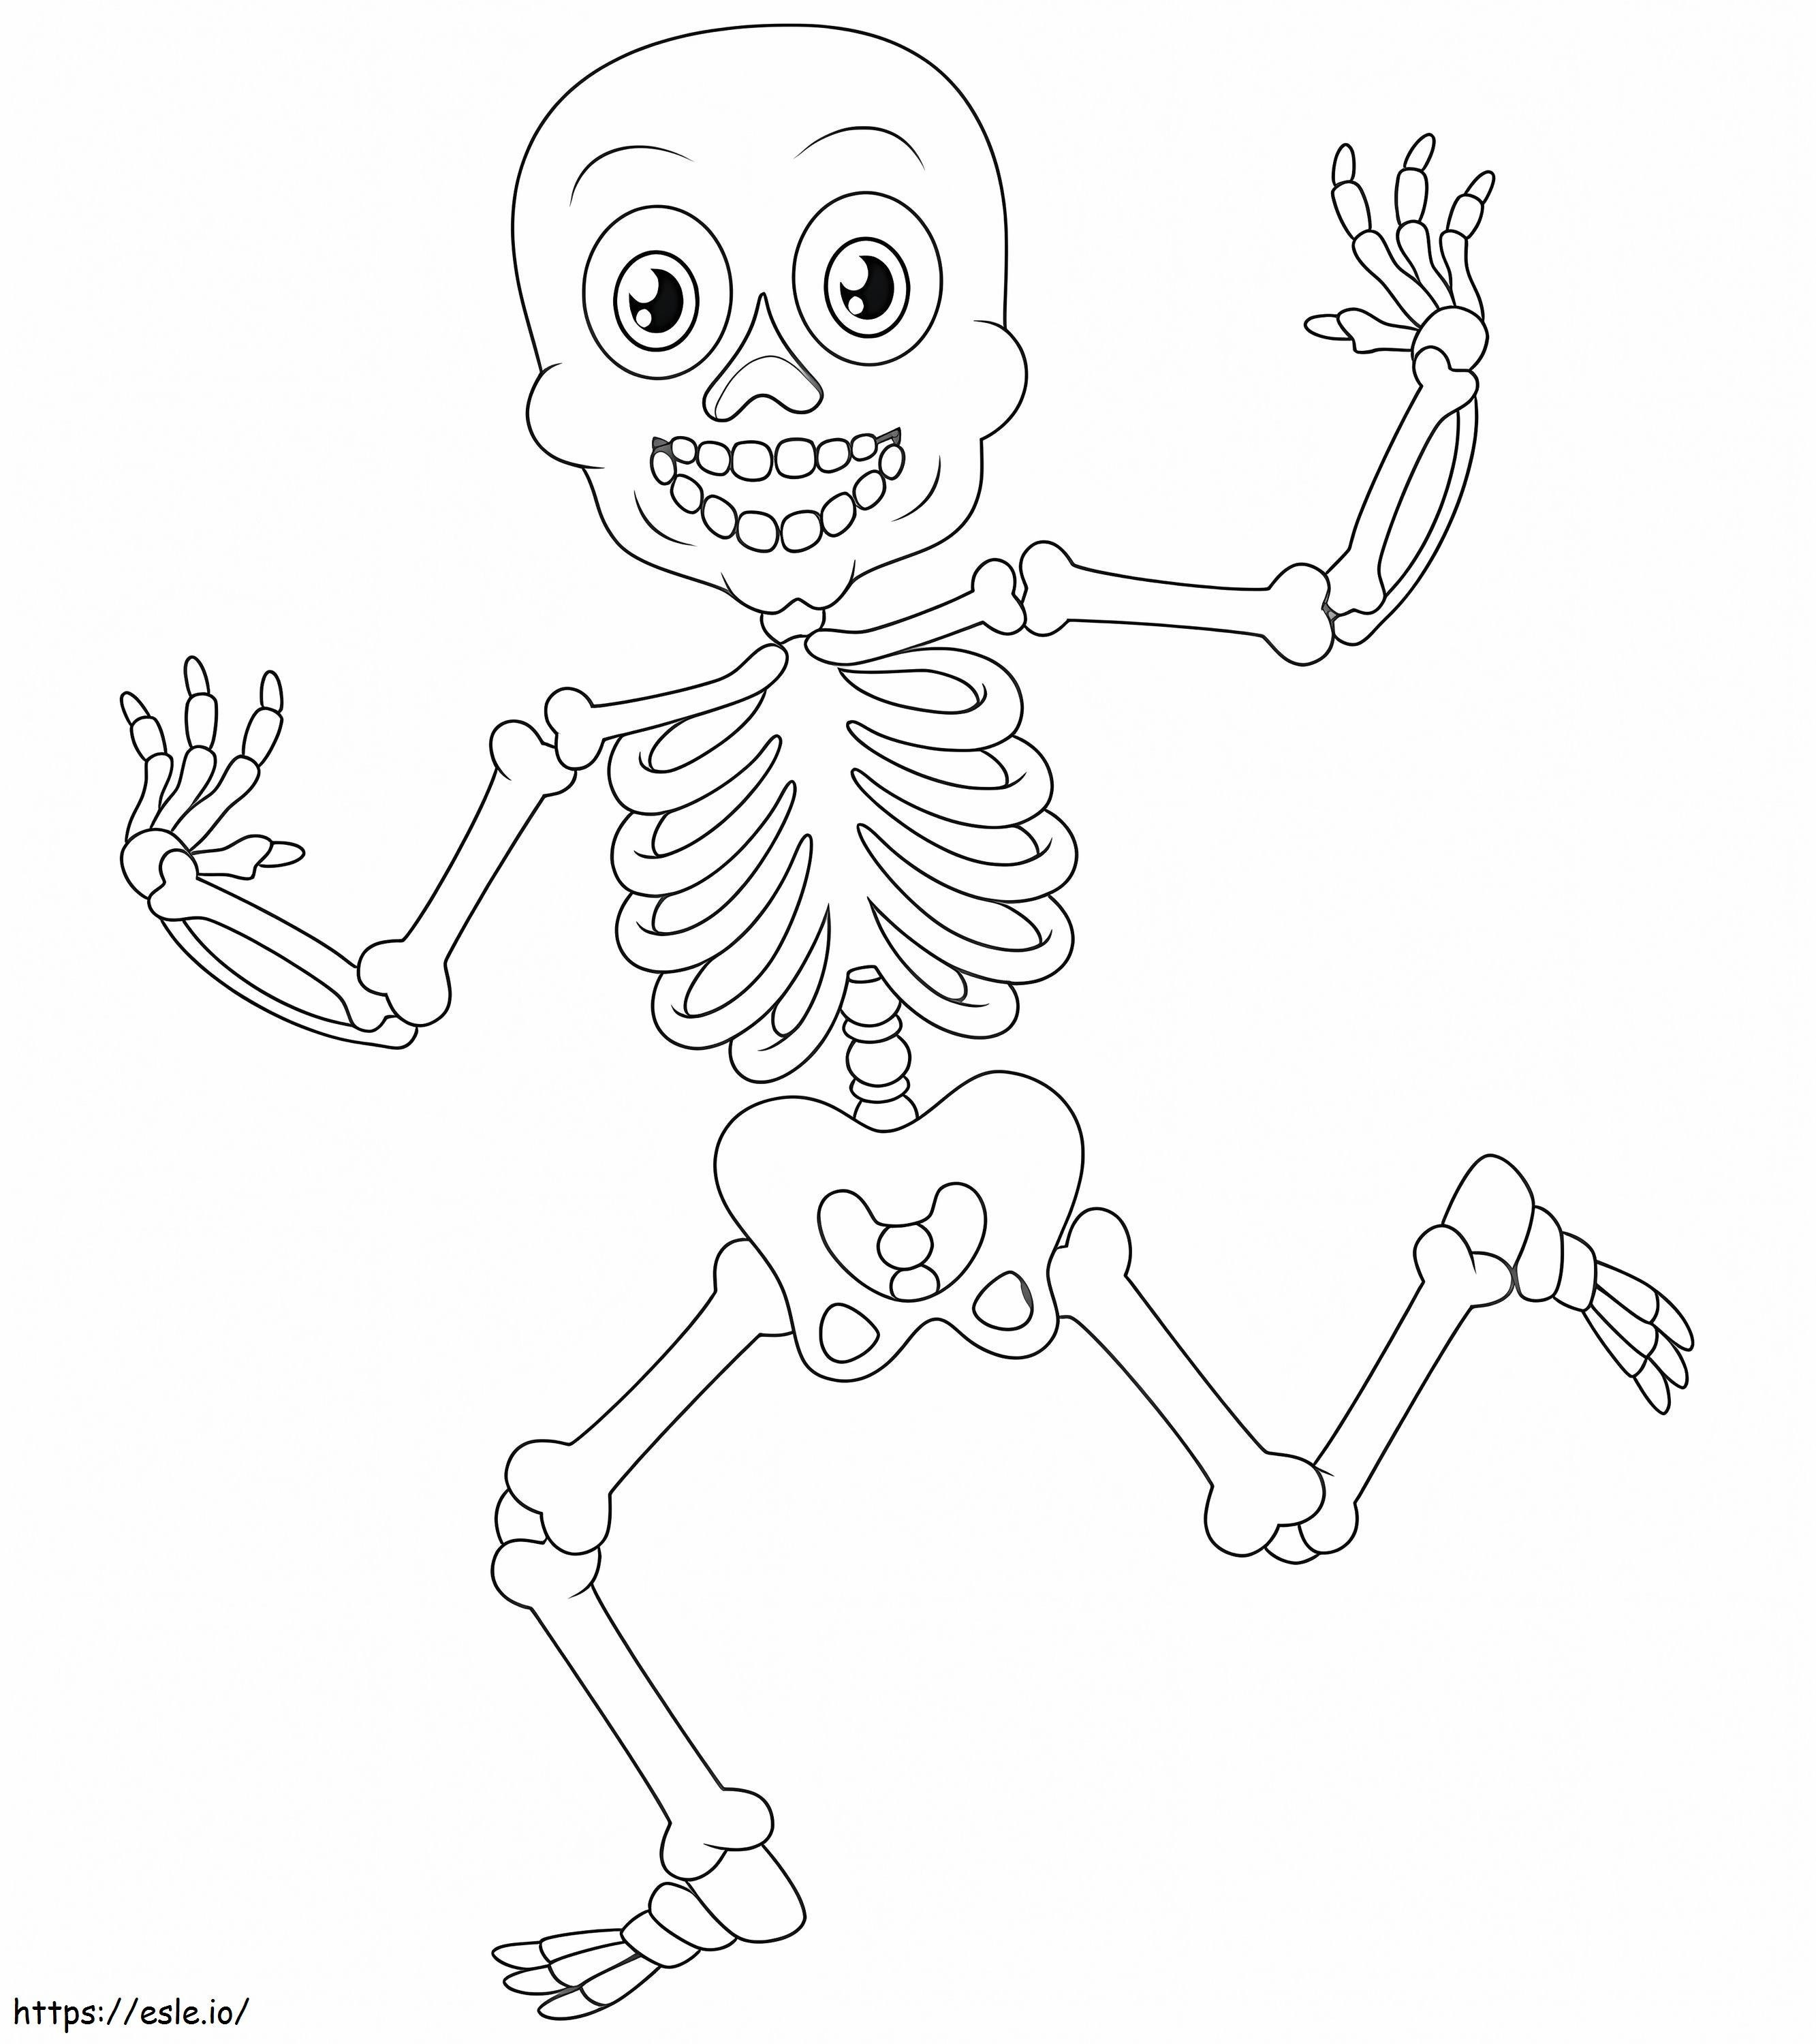 Zabawny szkielet kolorowanka